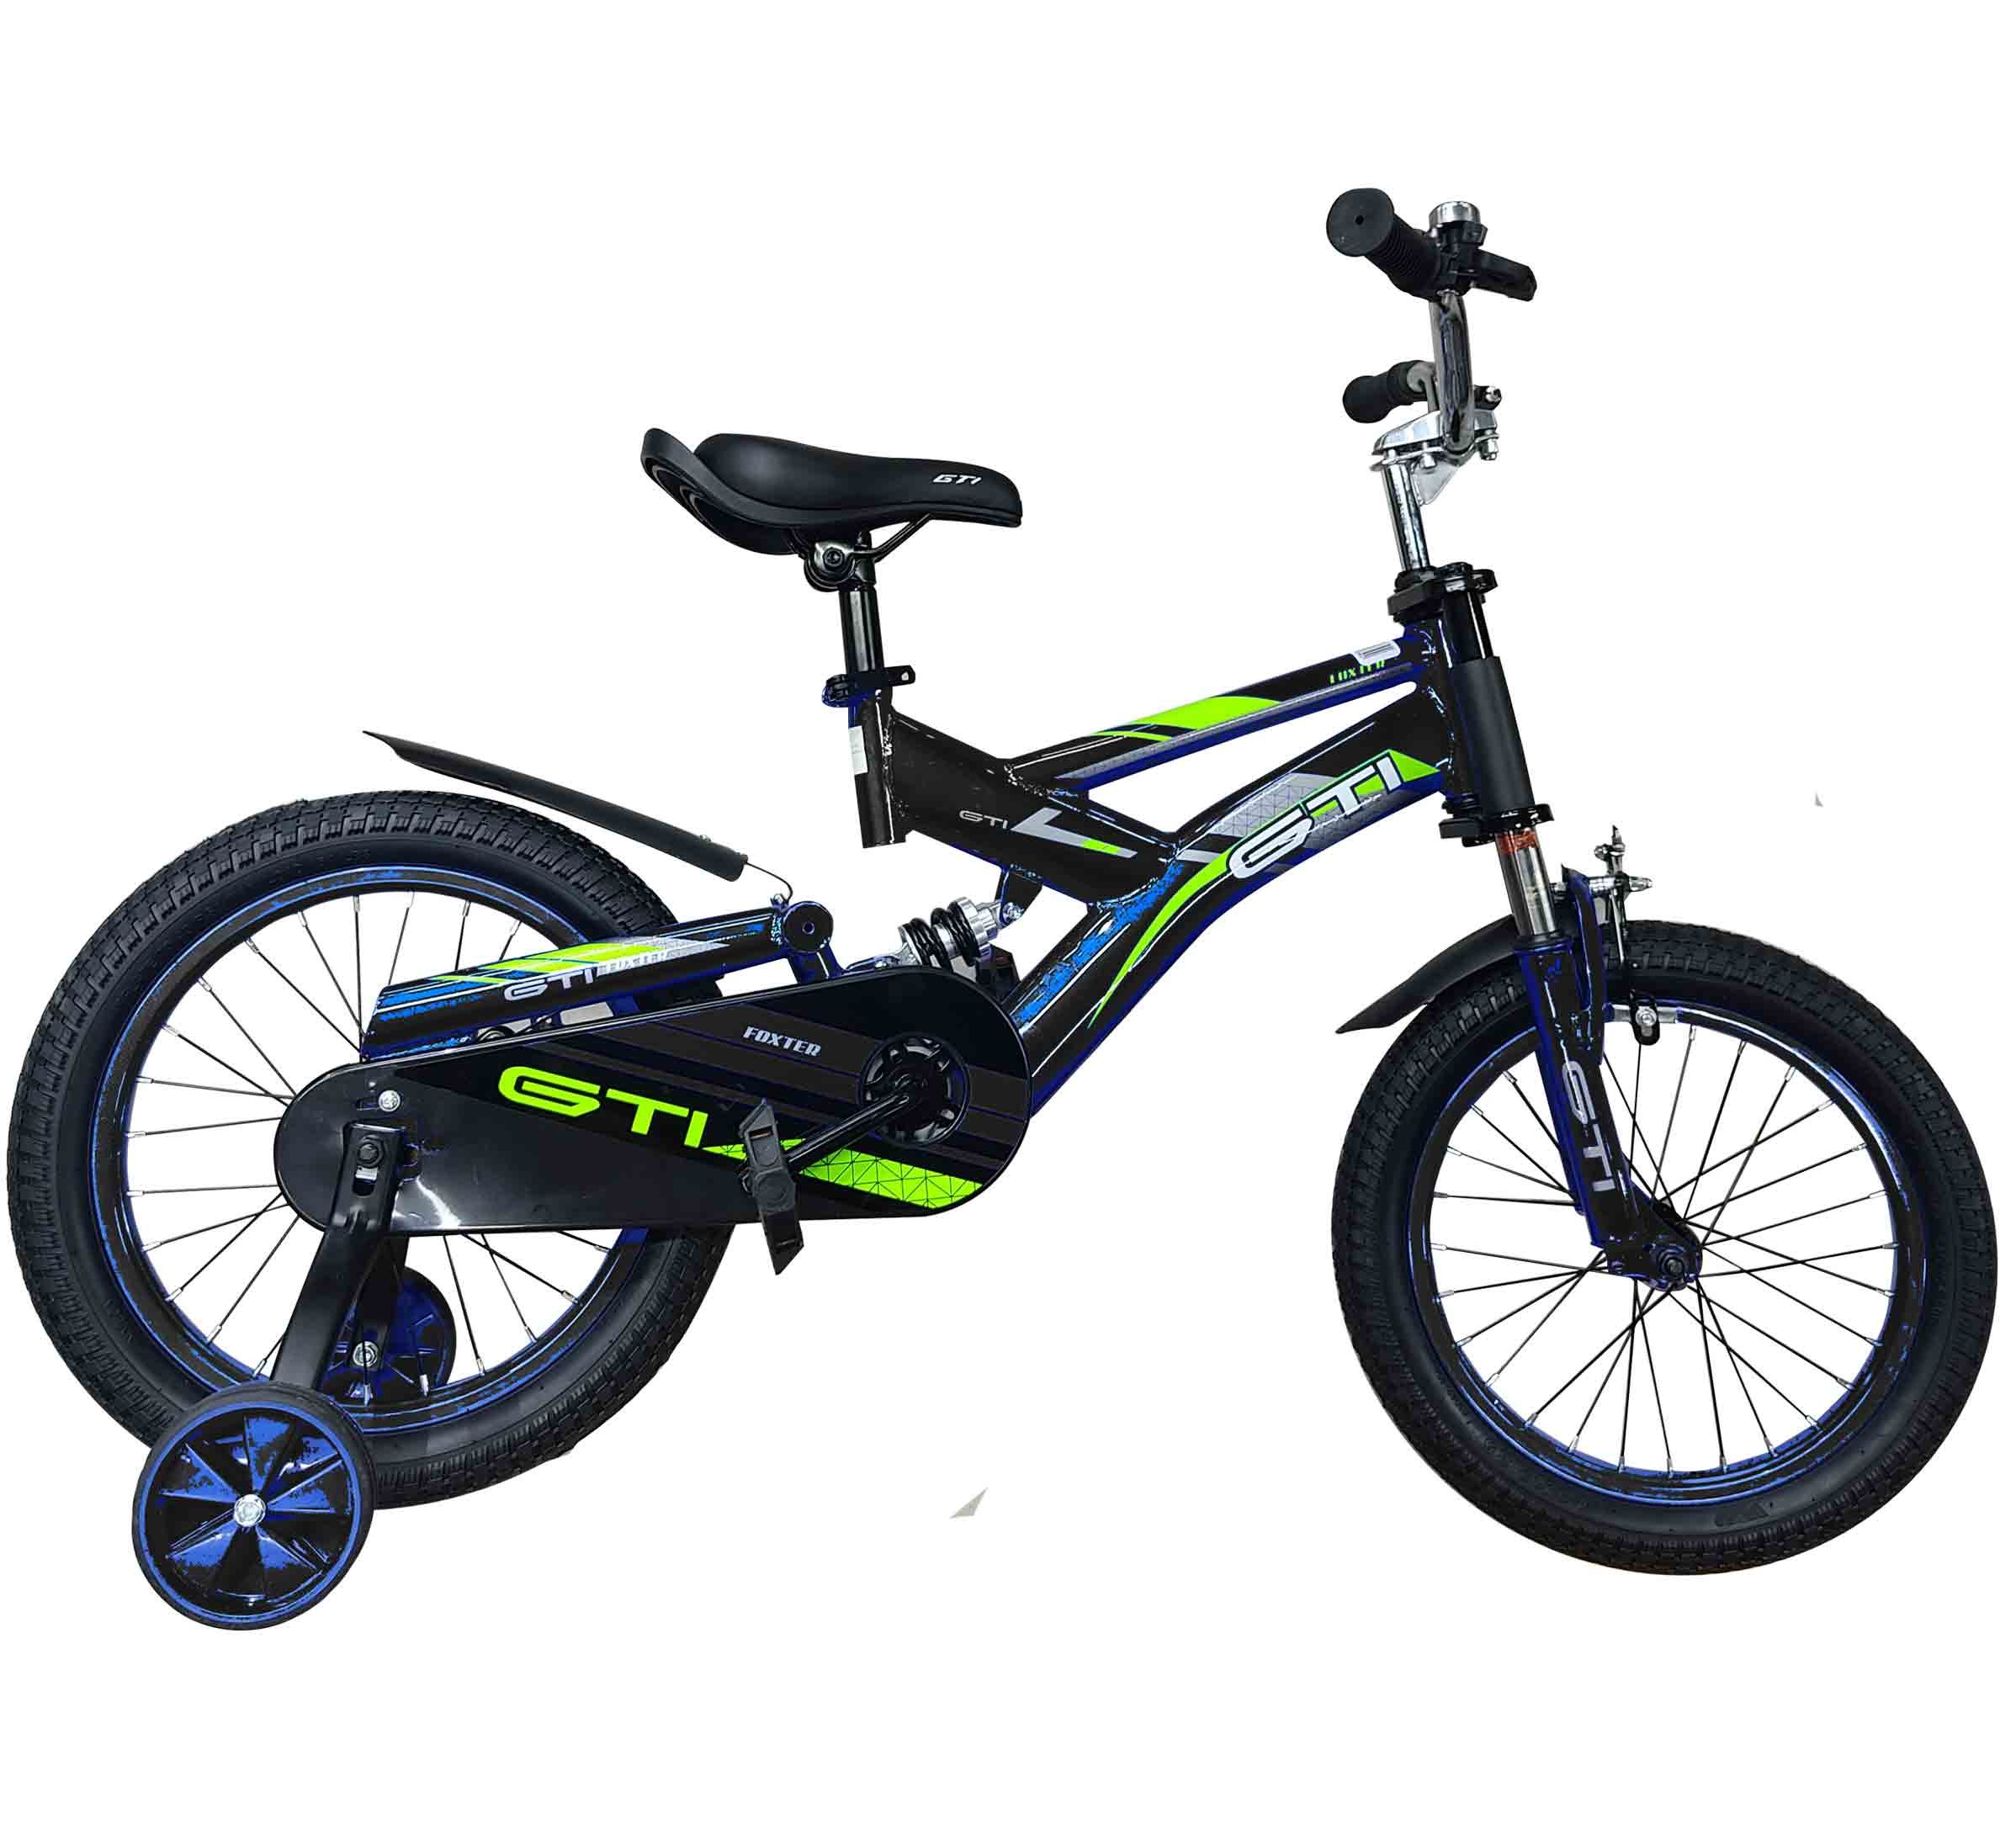 GTI Bicicleta Foxter de niño aro16”